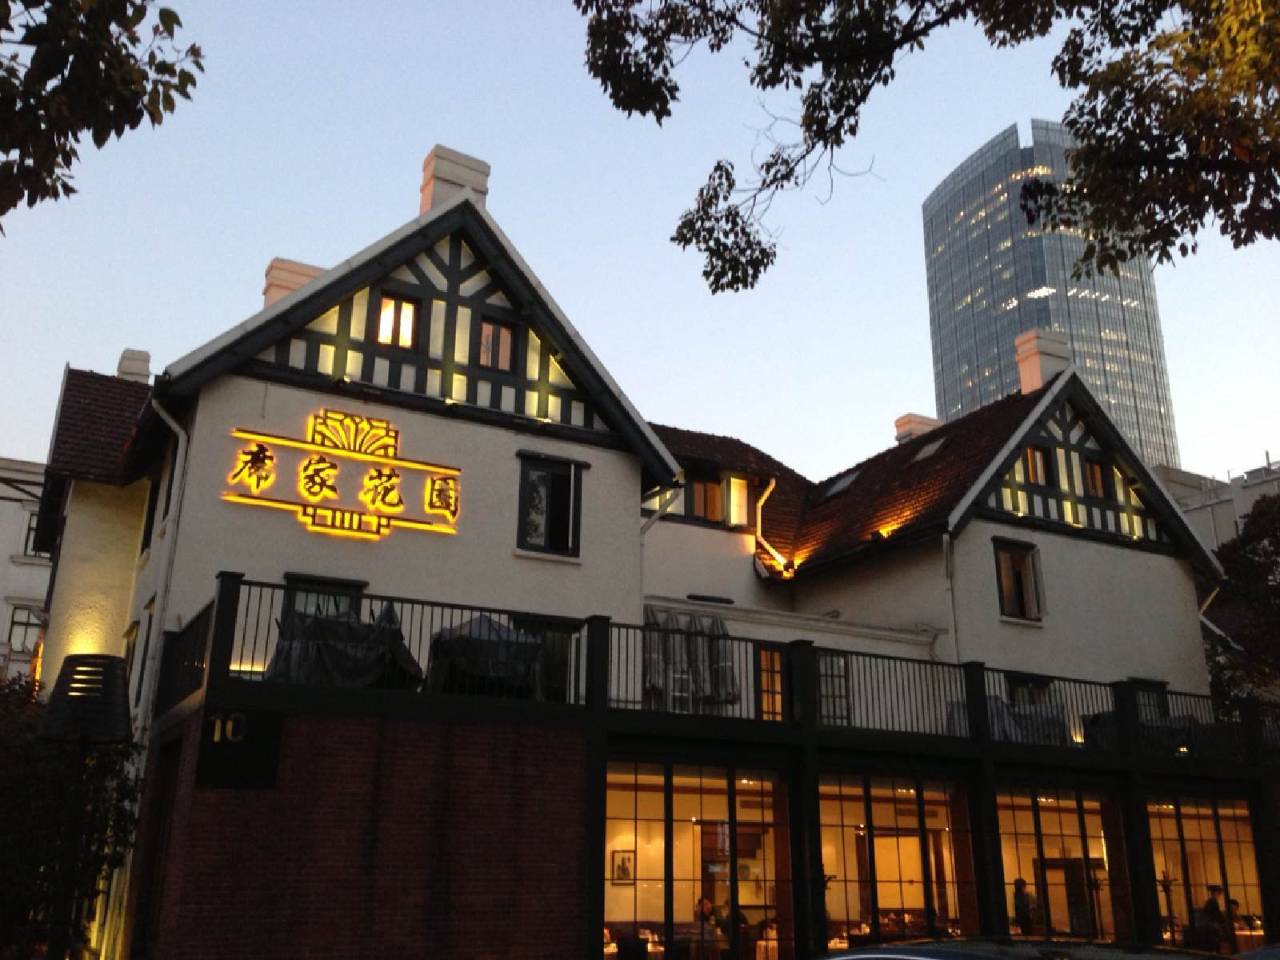 【便民信息】隐藏在静安花园洋房里的10家美食餐厅,去感受老上海的